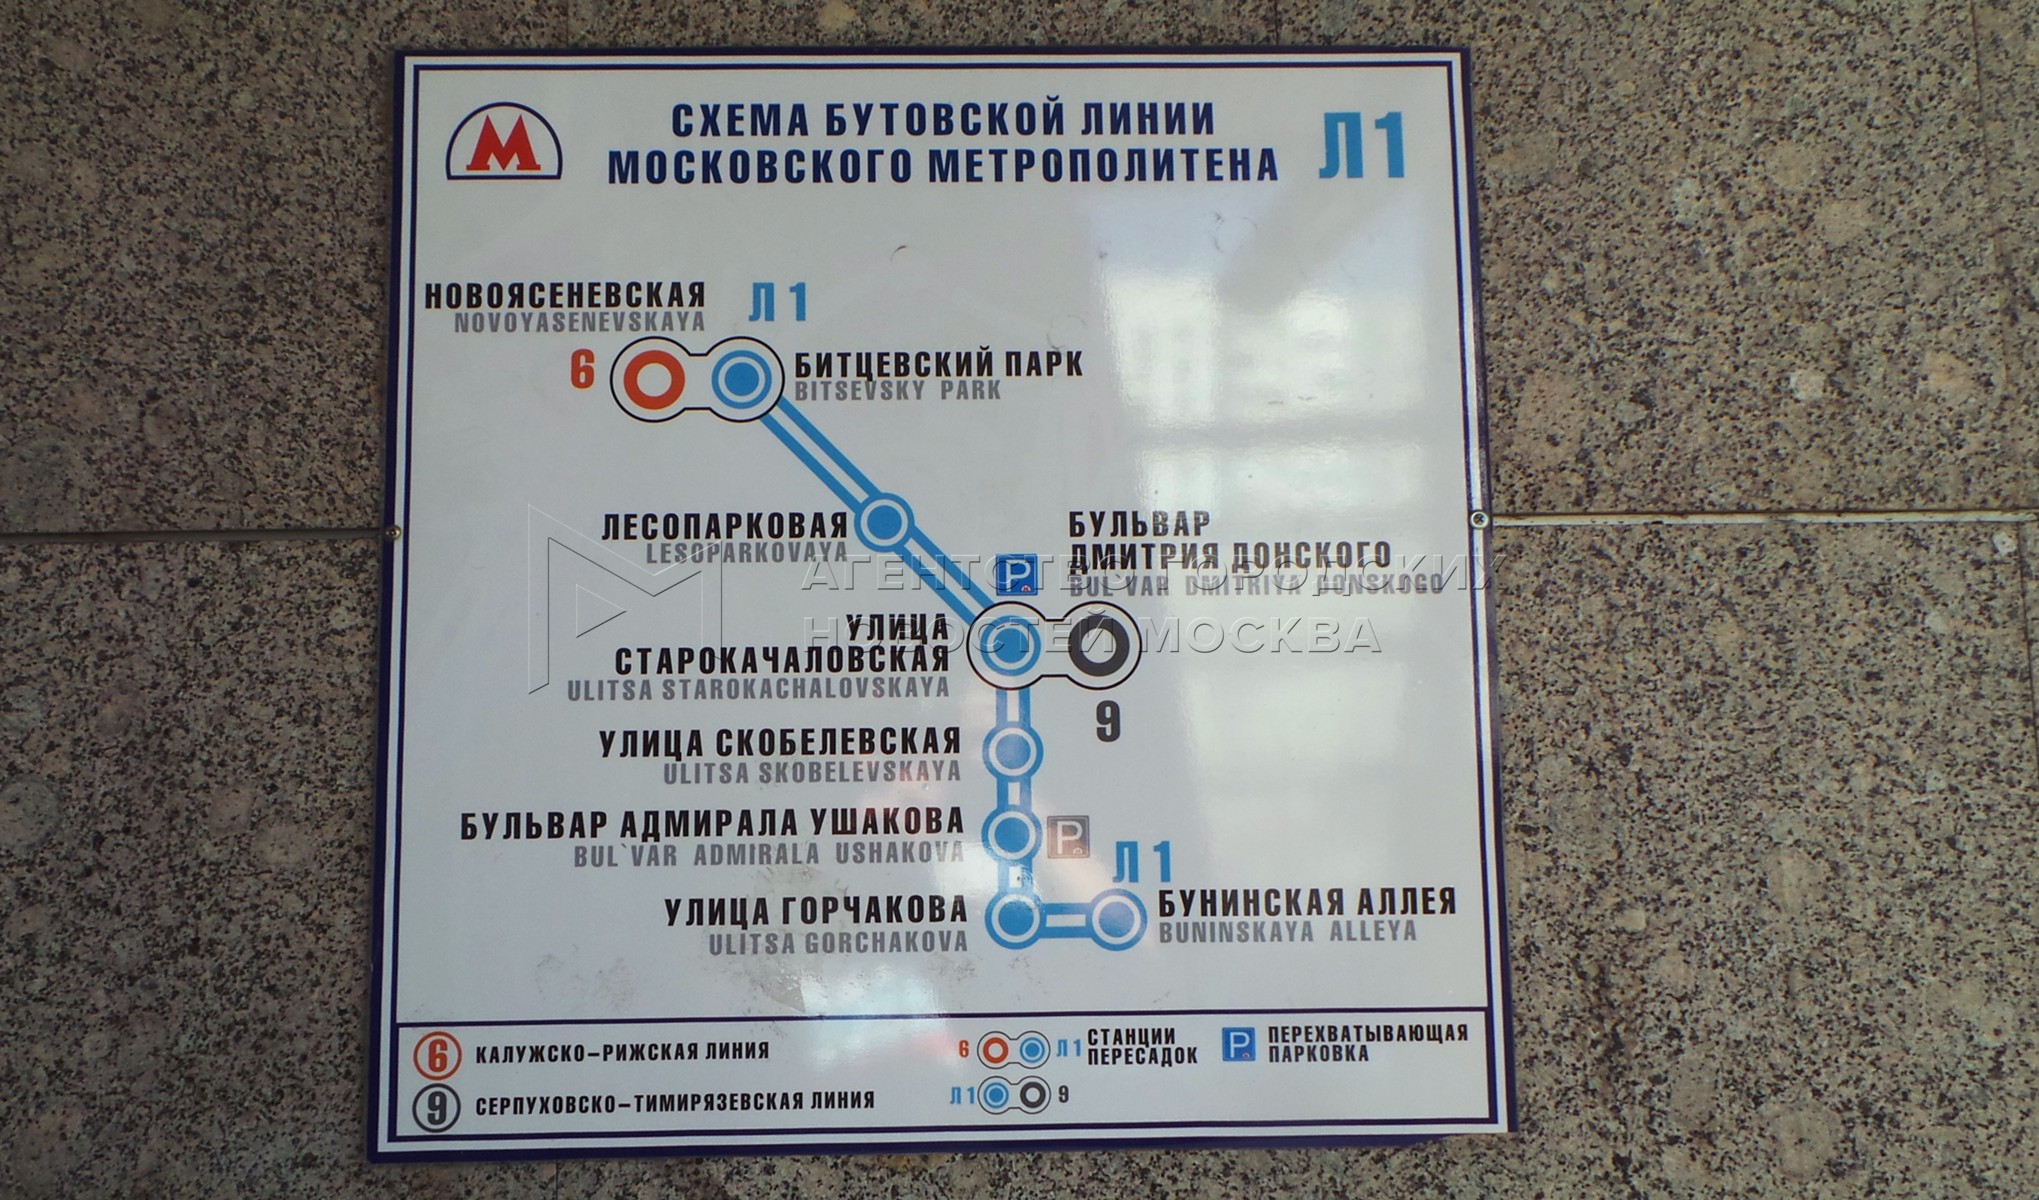 Станция метро Дмитрия Донского на карте метрополитена